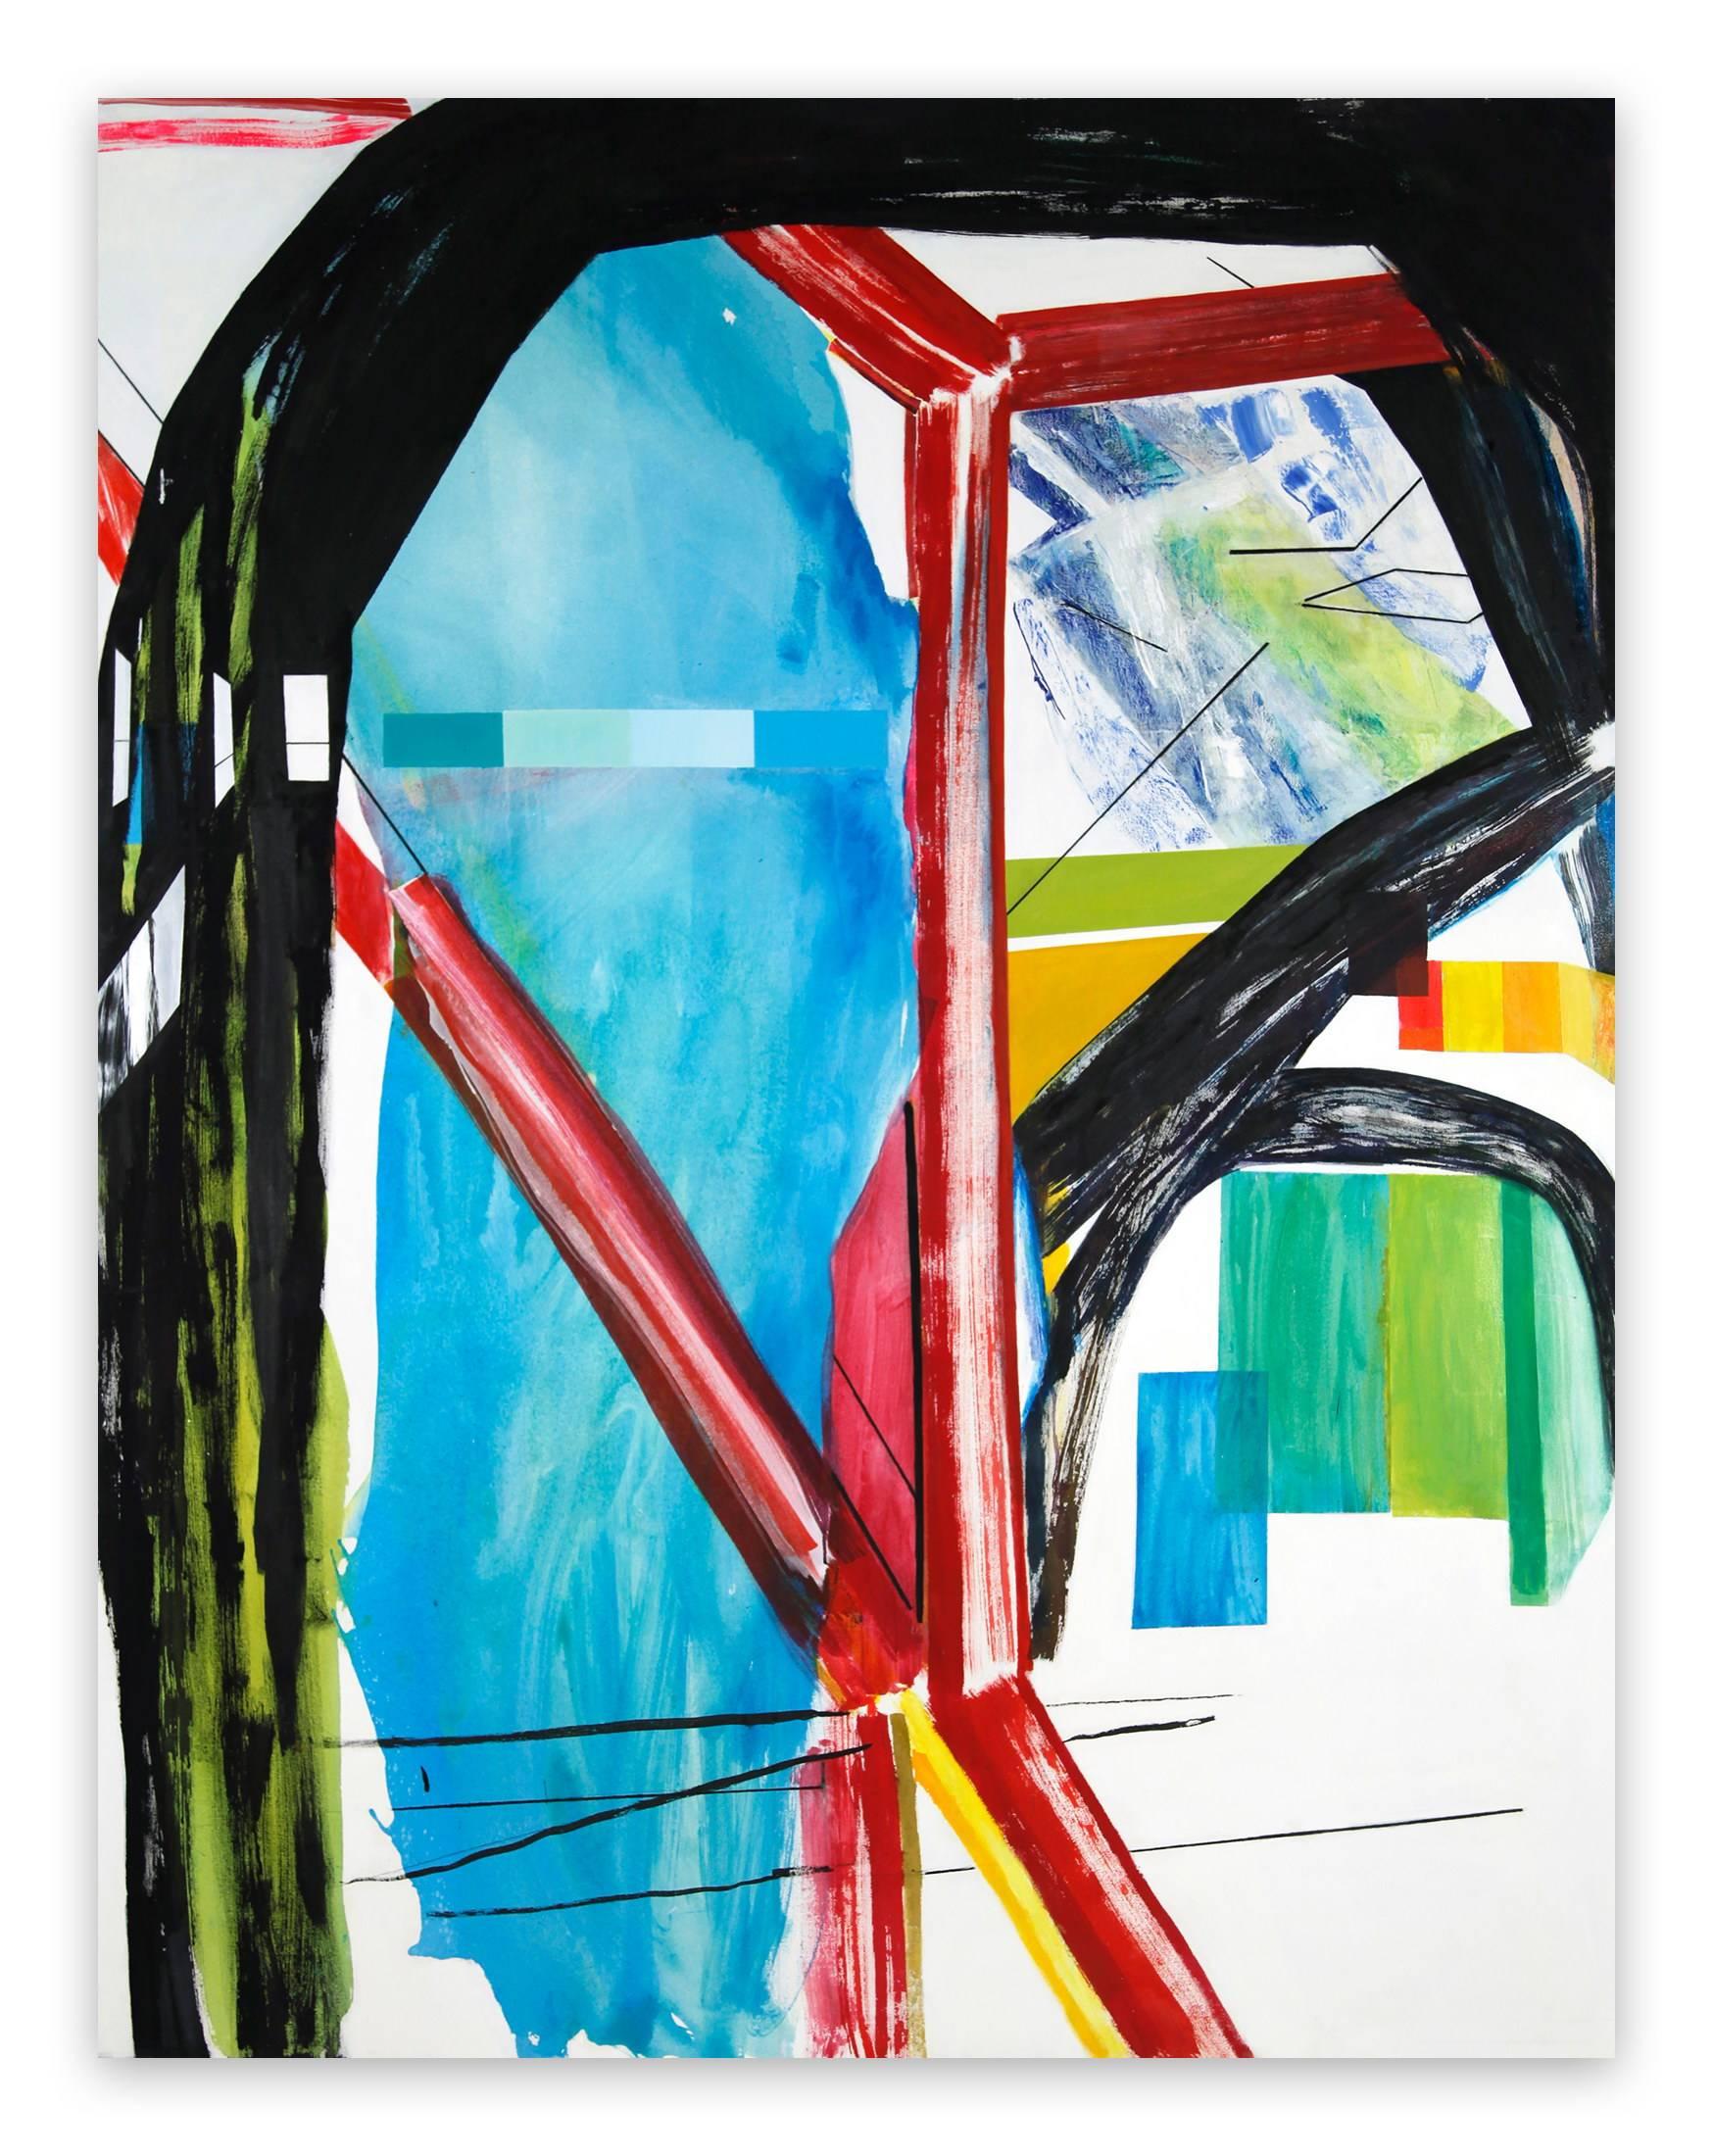 Abstract Painting Laura Newman - Intérieur avec éclats de peinture (peinture expressionniste abstraite)